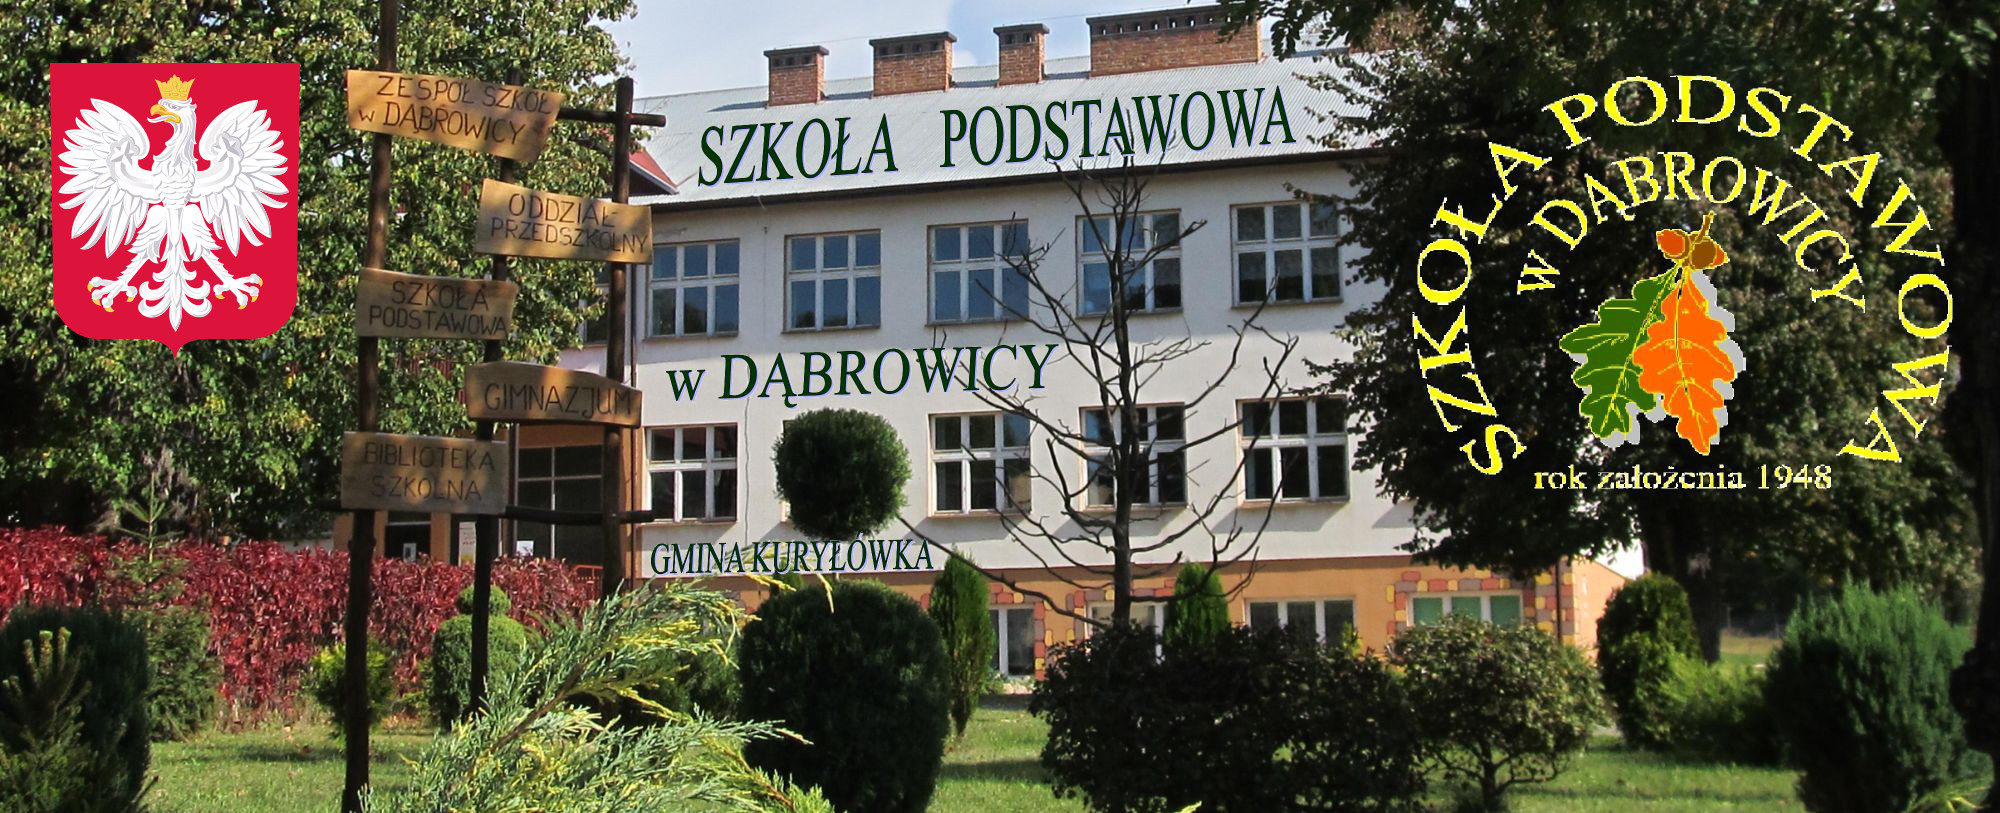 Szkoła Podstawowa w Dąbrowicy